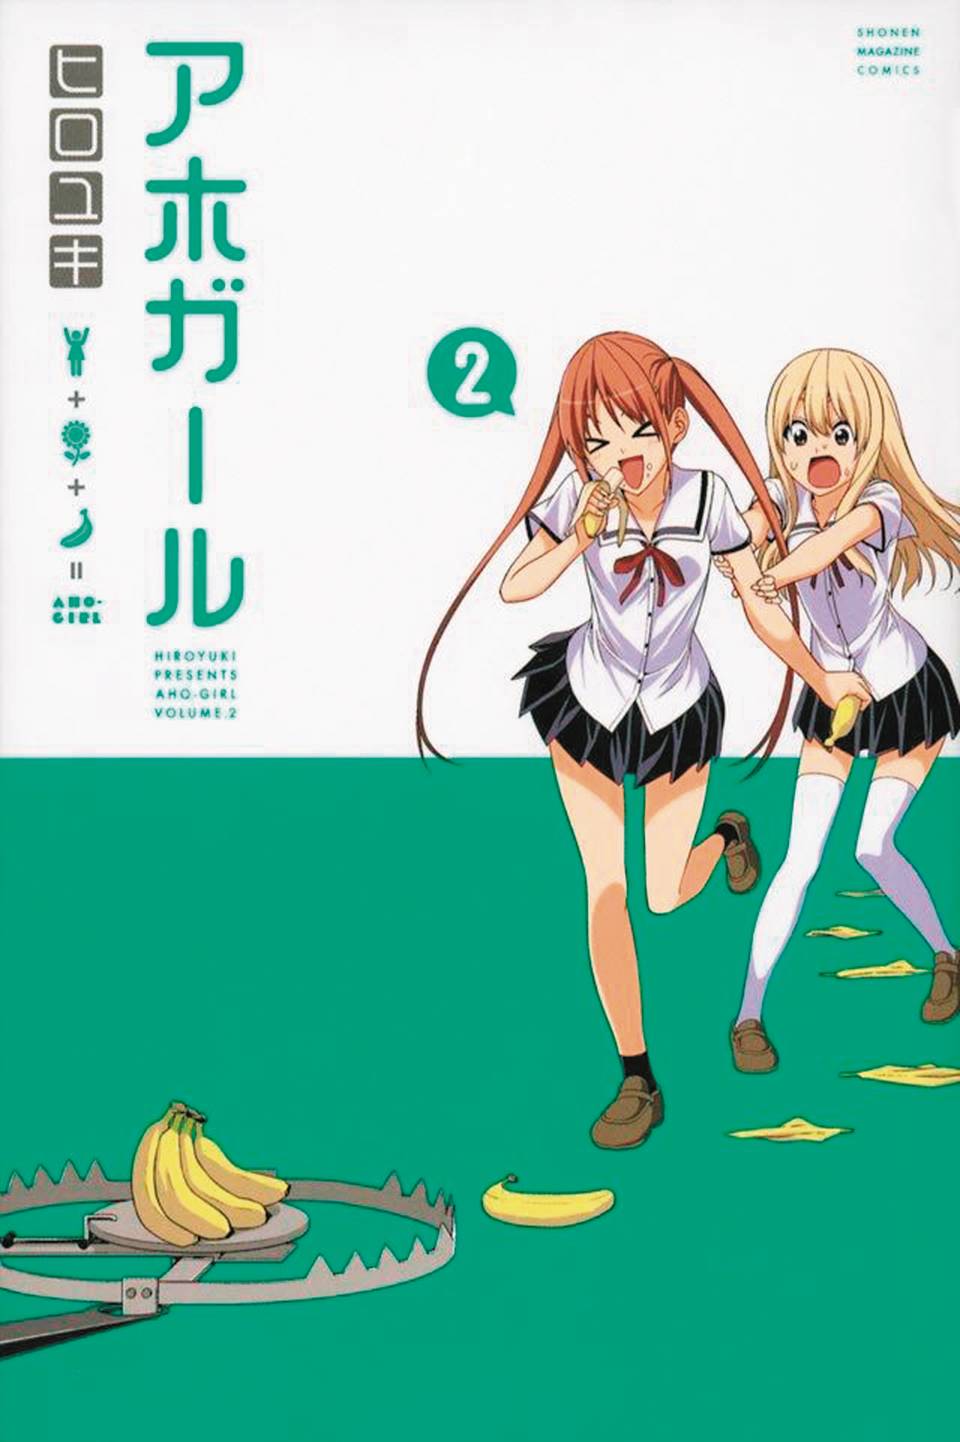 Aho Girl (Clueless Girl) Manga Volume 2